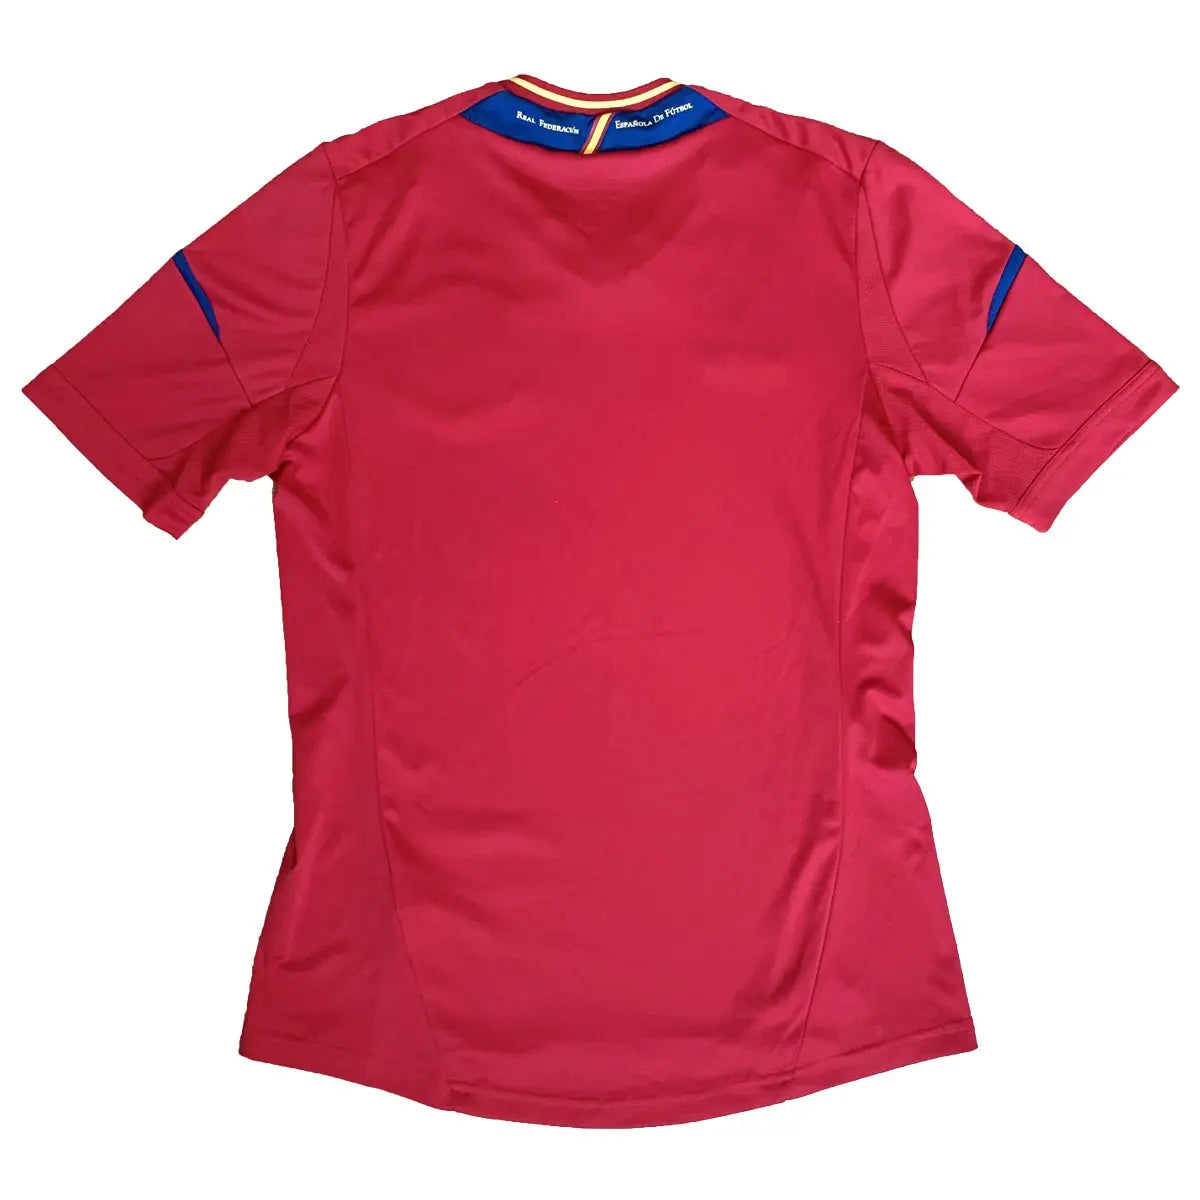 Maillot domicile retro/vintage authentique espagne 2011-2012, rouge et jaune avec l'équipementier adidas de dos